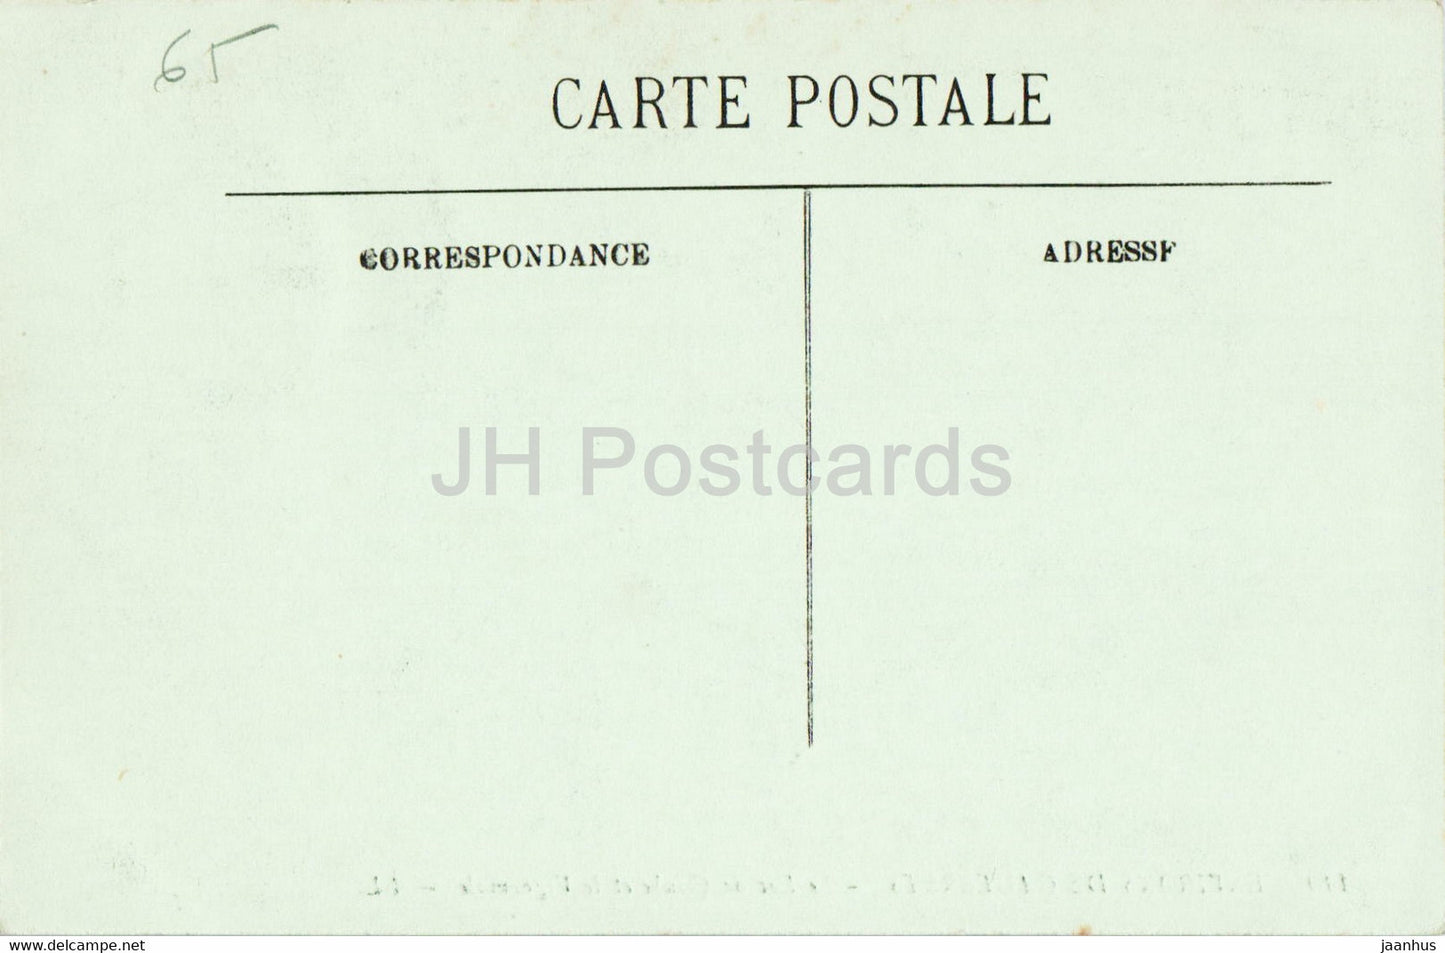 Environs de Cauterets - Le Lac de Gaube et le Vignemale - 110 - old postcard - France - unused